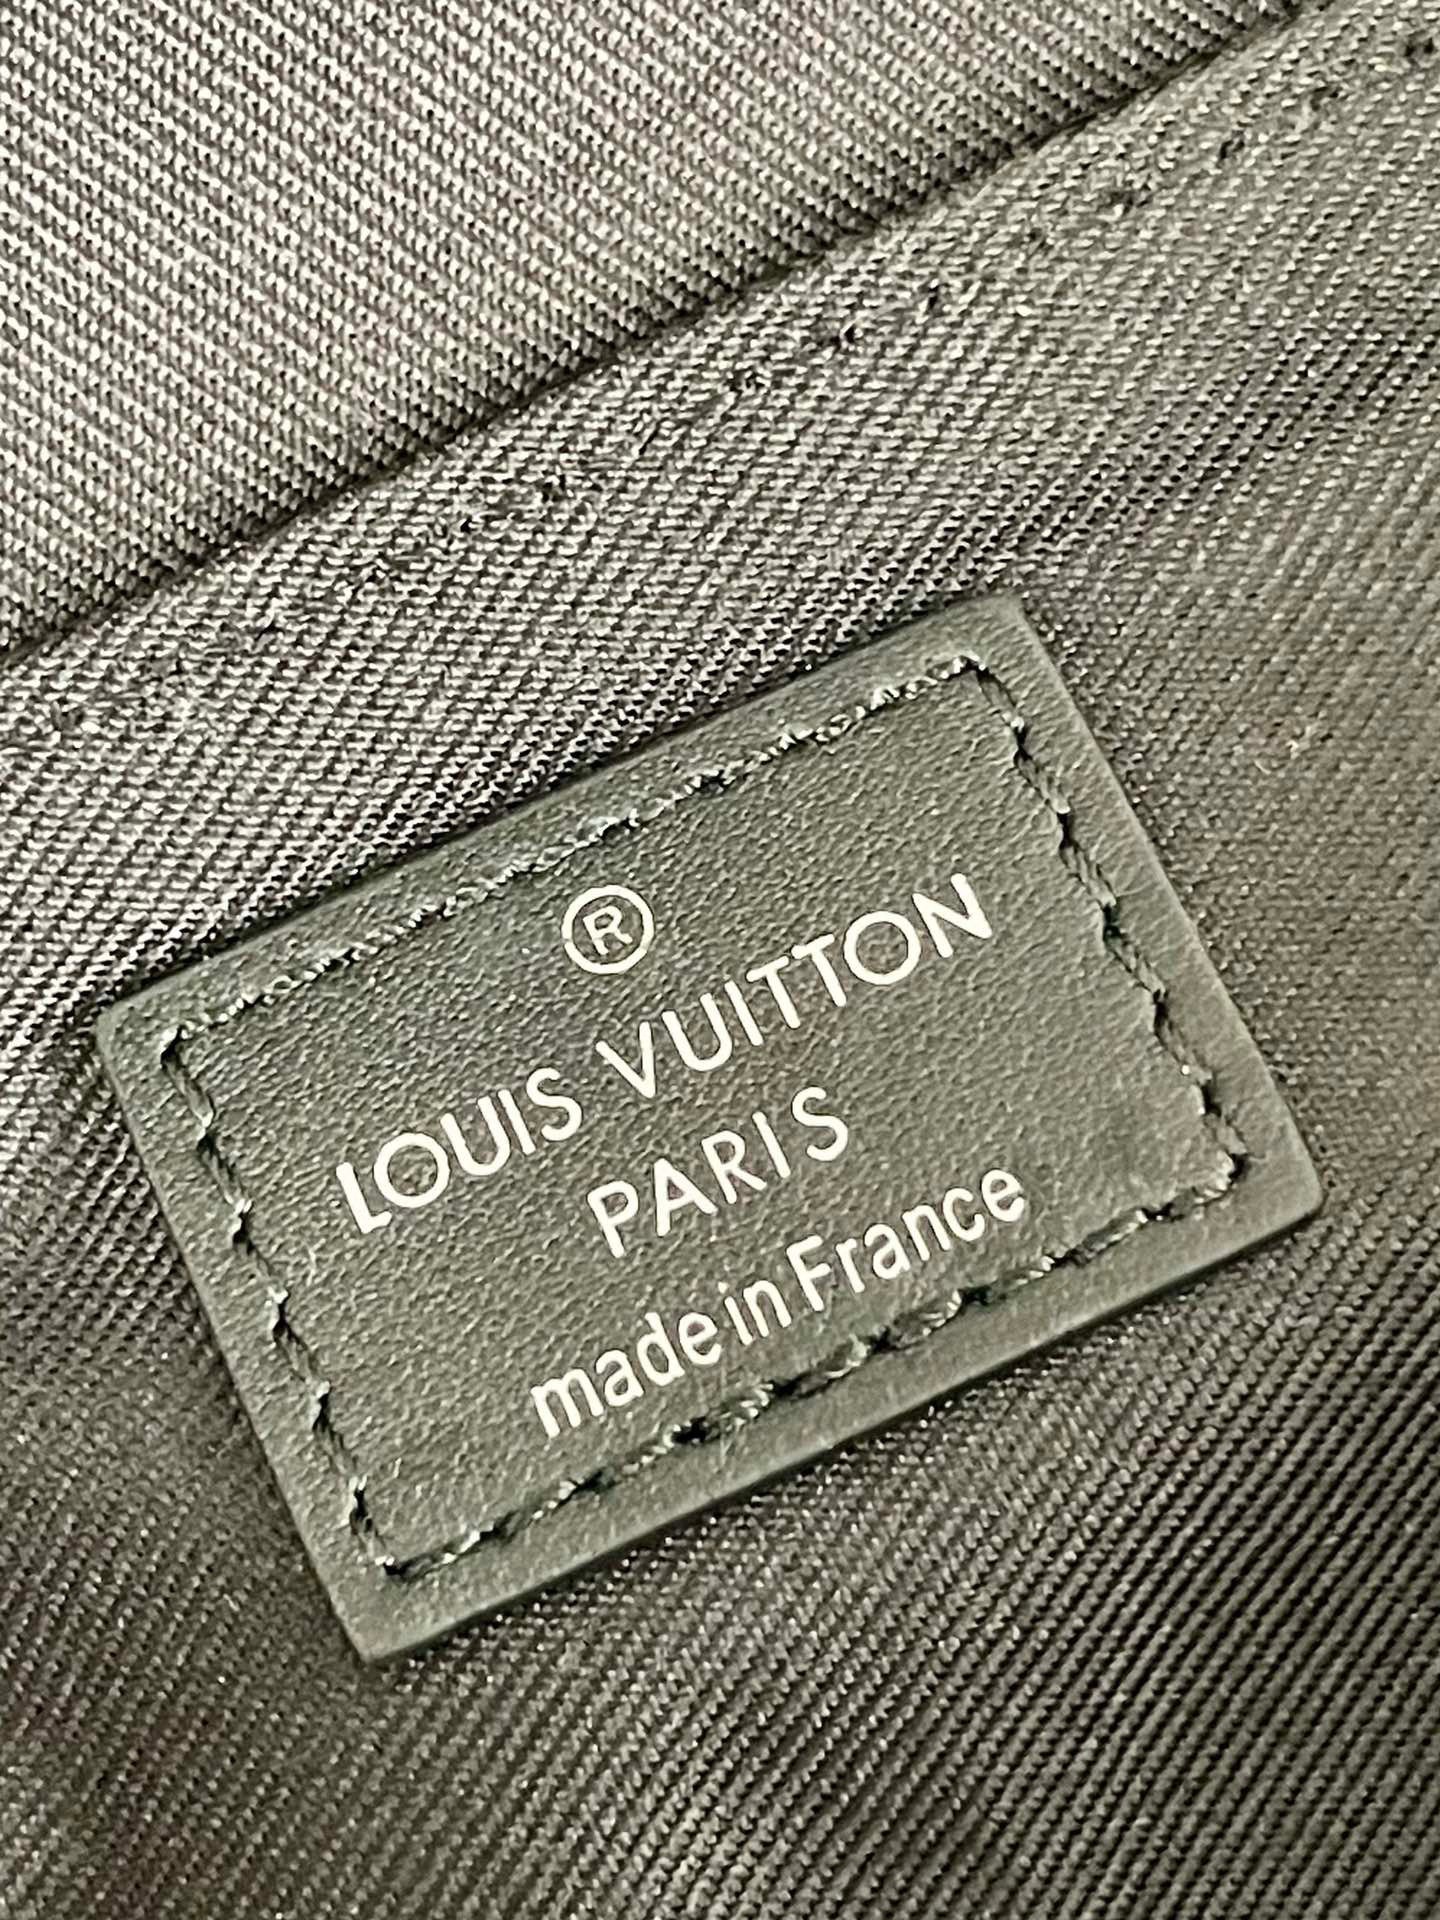 Replica Louis Vuitton M44000 District PM Messenger Bag Monogram Eclipse  Canvas For Sale